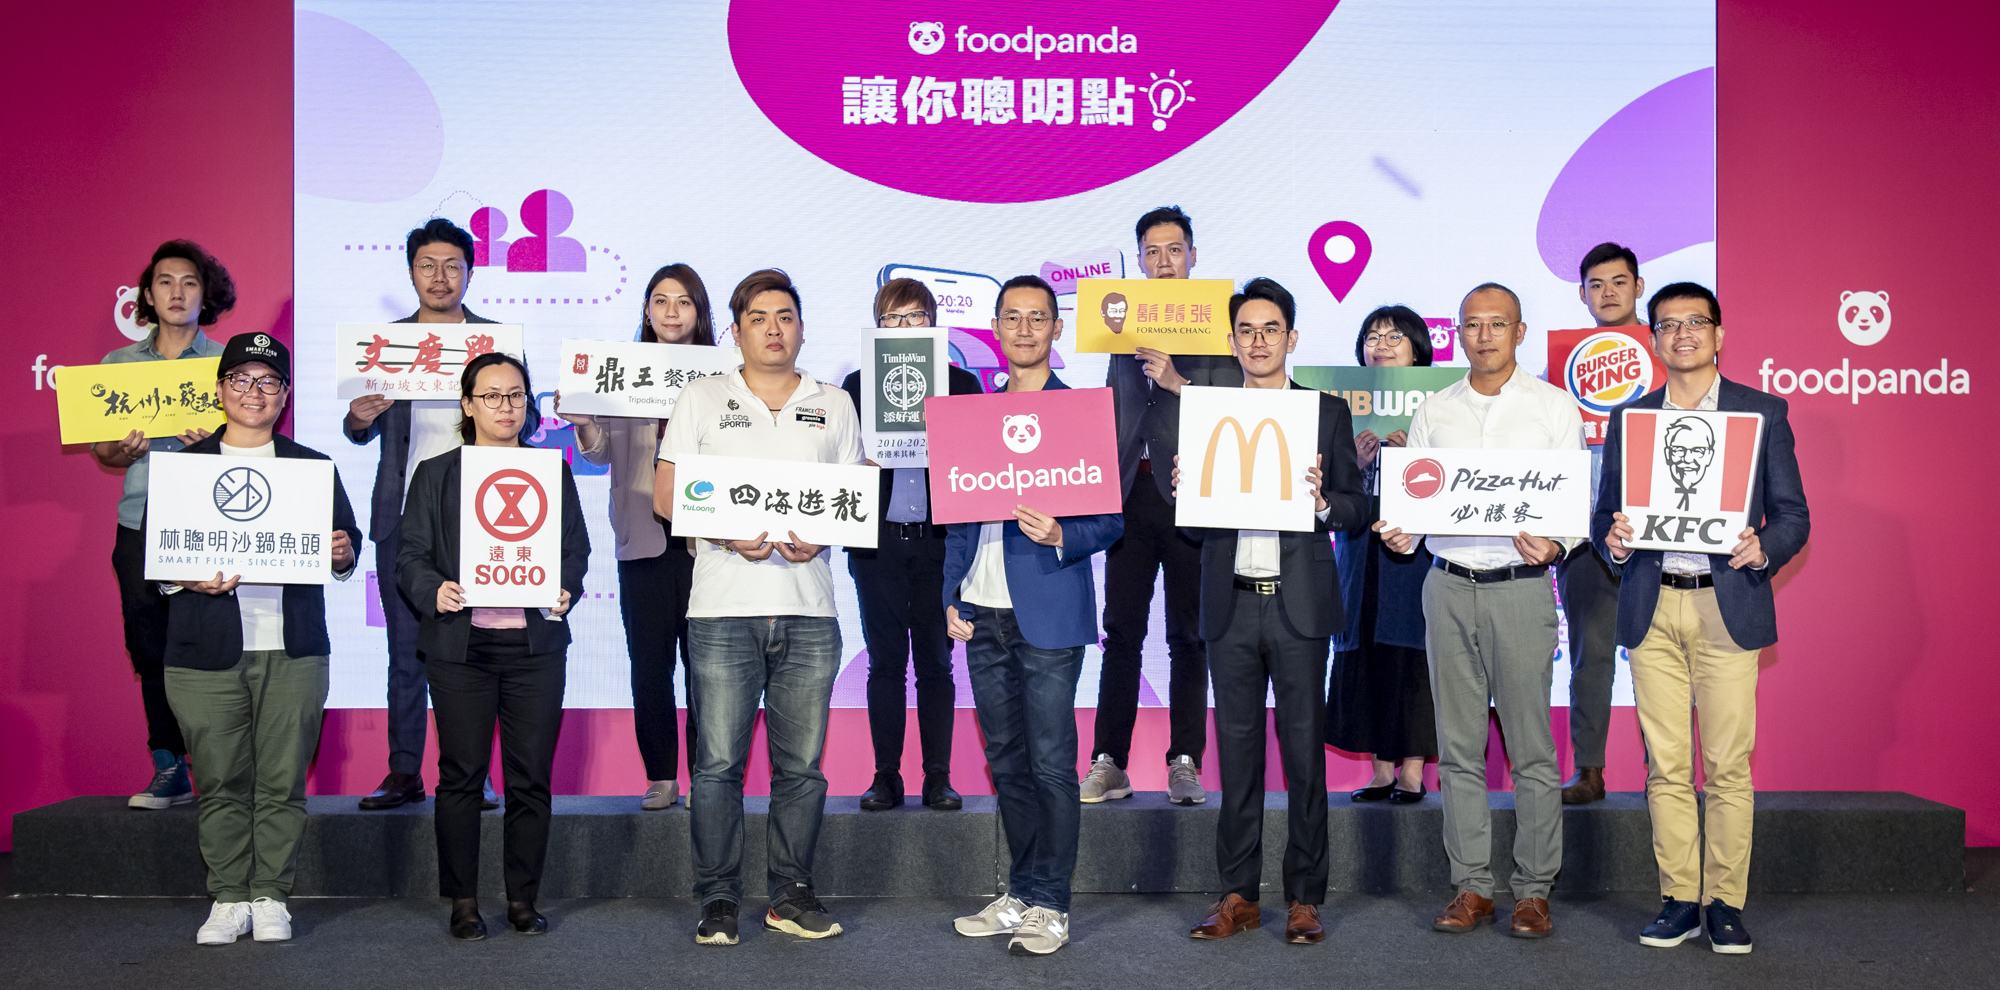 foodpanda 宣告創建一站式「快商務」即時外送服務平台 2020台灣成績斐然 稱霸亞太